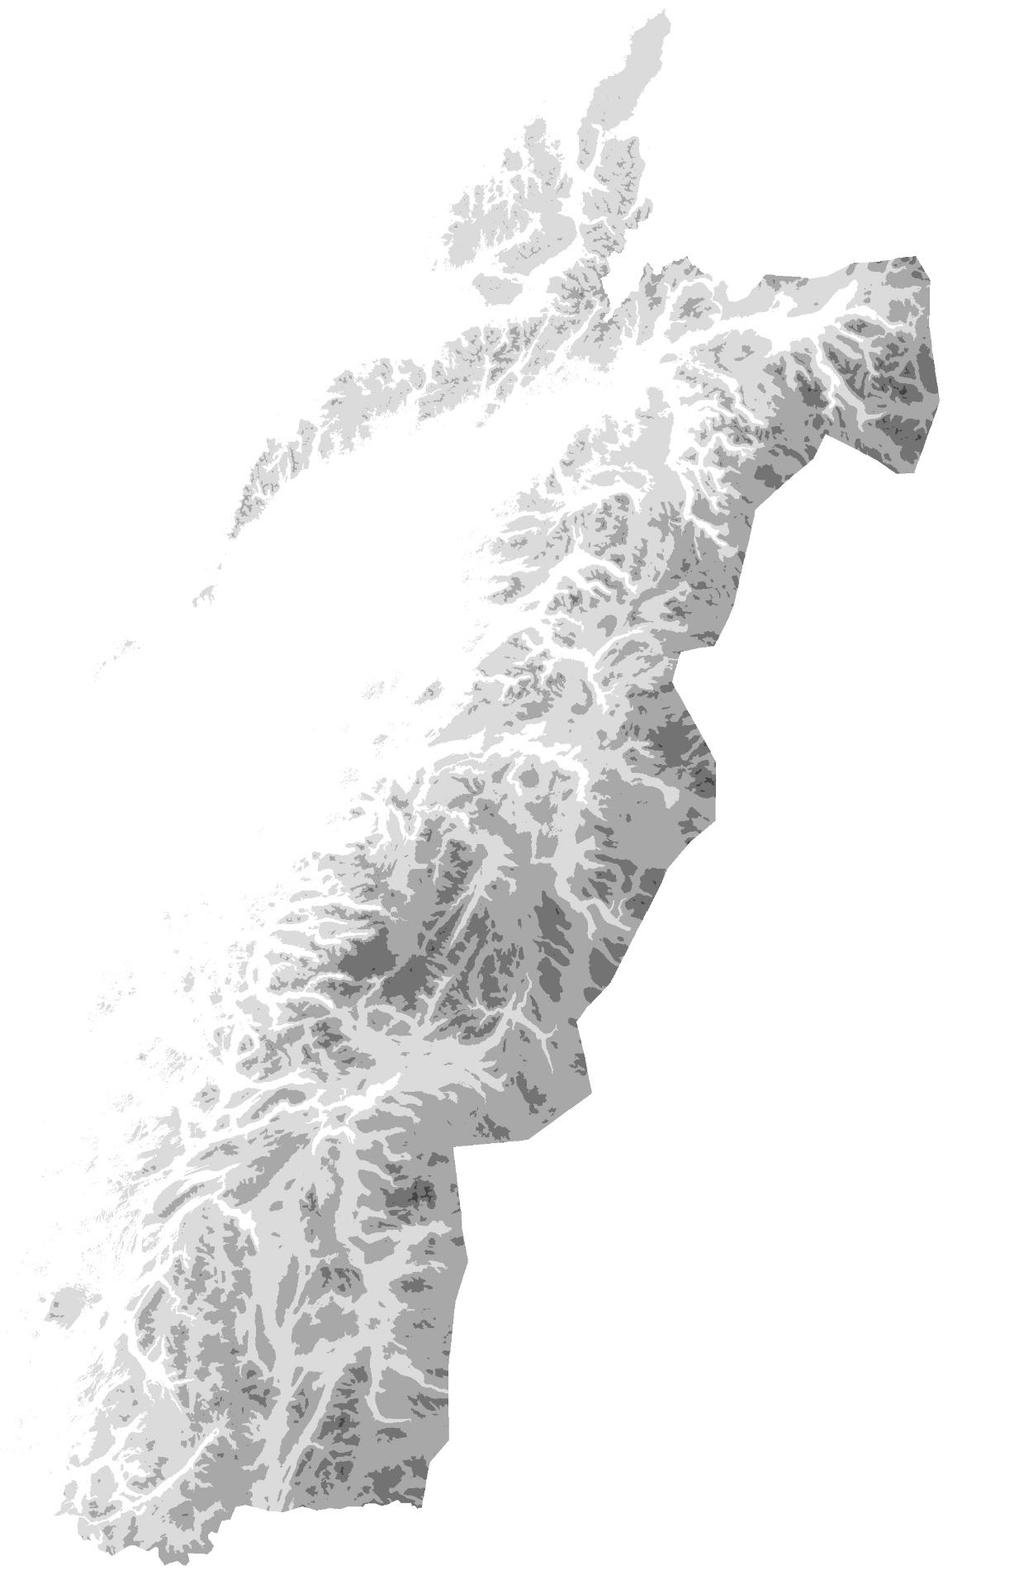 2. Områdebeskrivelse Høsten 218 ble forekomsten av laks, sjøørret og sjørøye i 24 elver i Nordland, fra Forfjordelva i nord til Urvollelva i sør, kartlagt eller forsøkt kartlagt ved